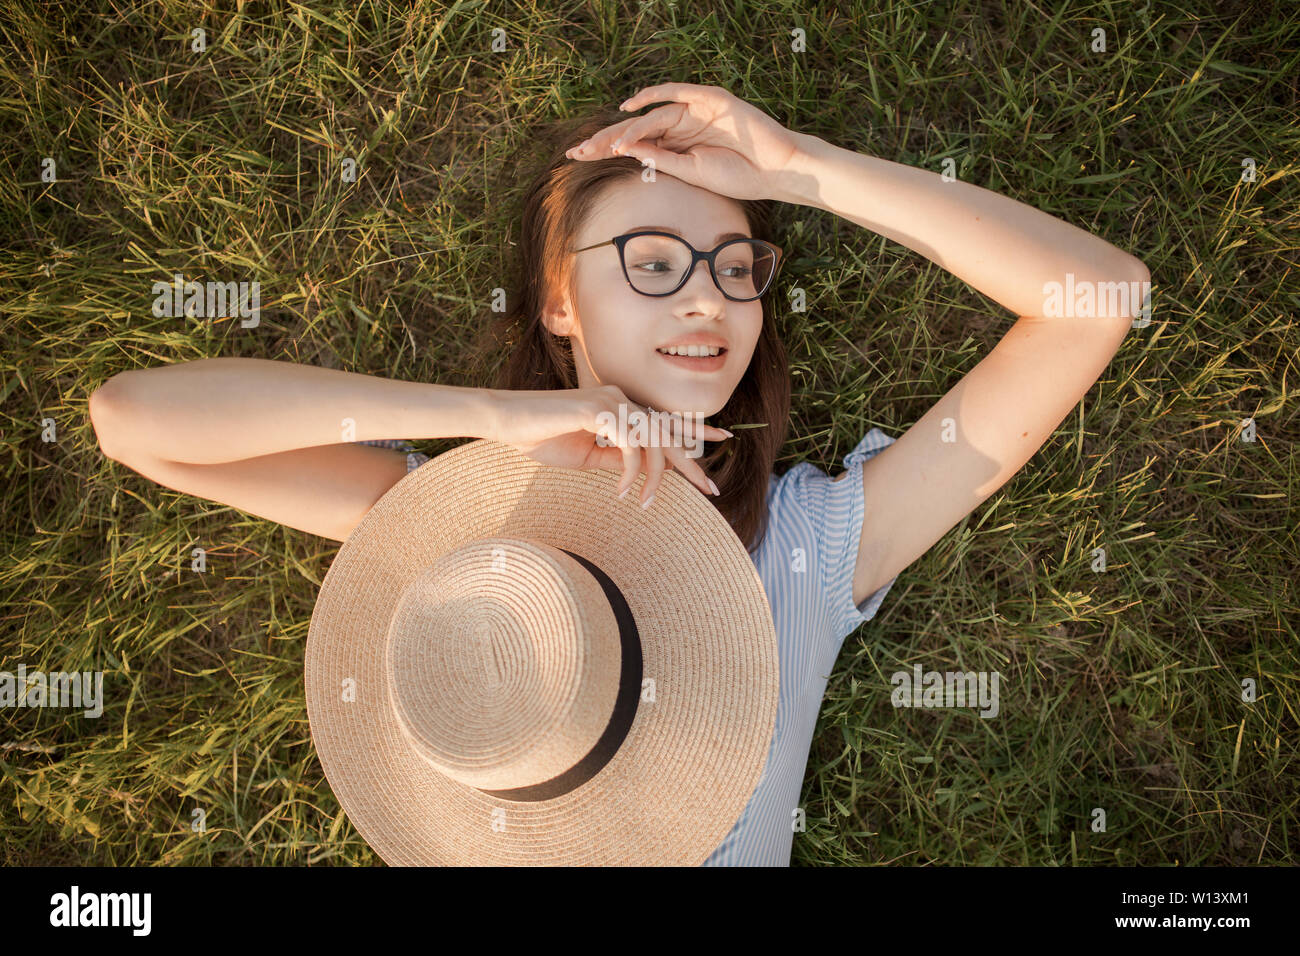 Close-up Vue de dessus d'une jeune fille dans le parc étendu sur l'herbe verte. Lunettes et chapeau. Jeunesse et loisirs loisirs heureux Banque D'Images